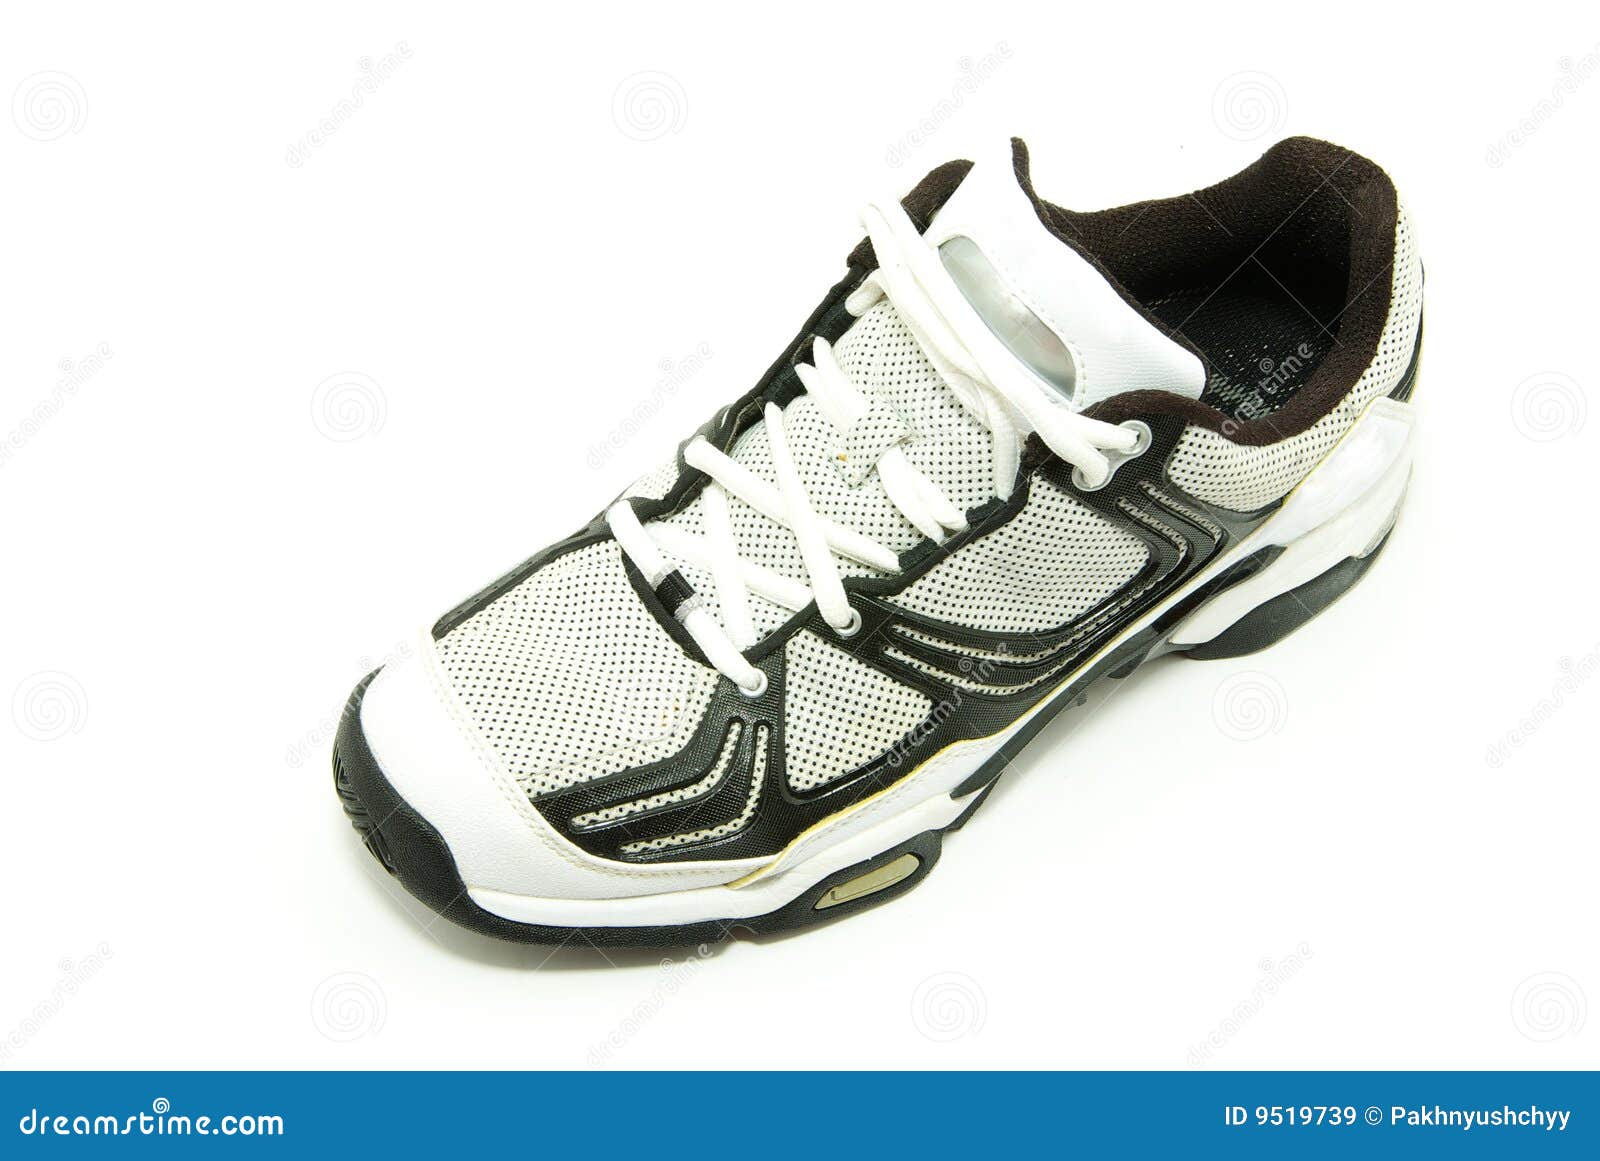 Running shoes on white stock image. Image of runs, athlete - 9519739